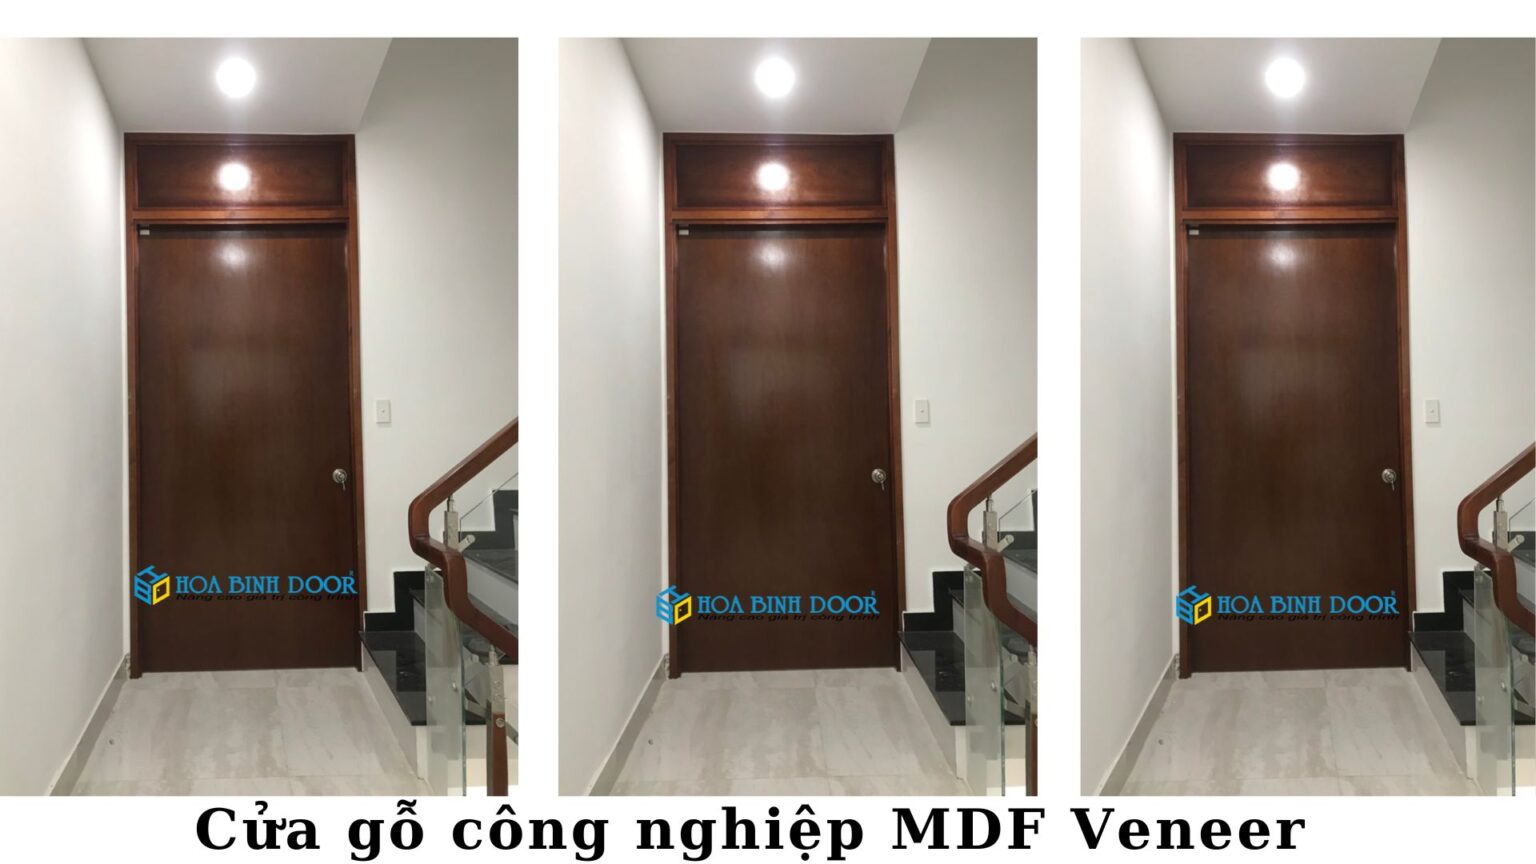 Cửa gỗ MDF Veneer tại Bình Thuận - Cửa phòng ngủ